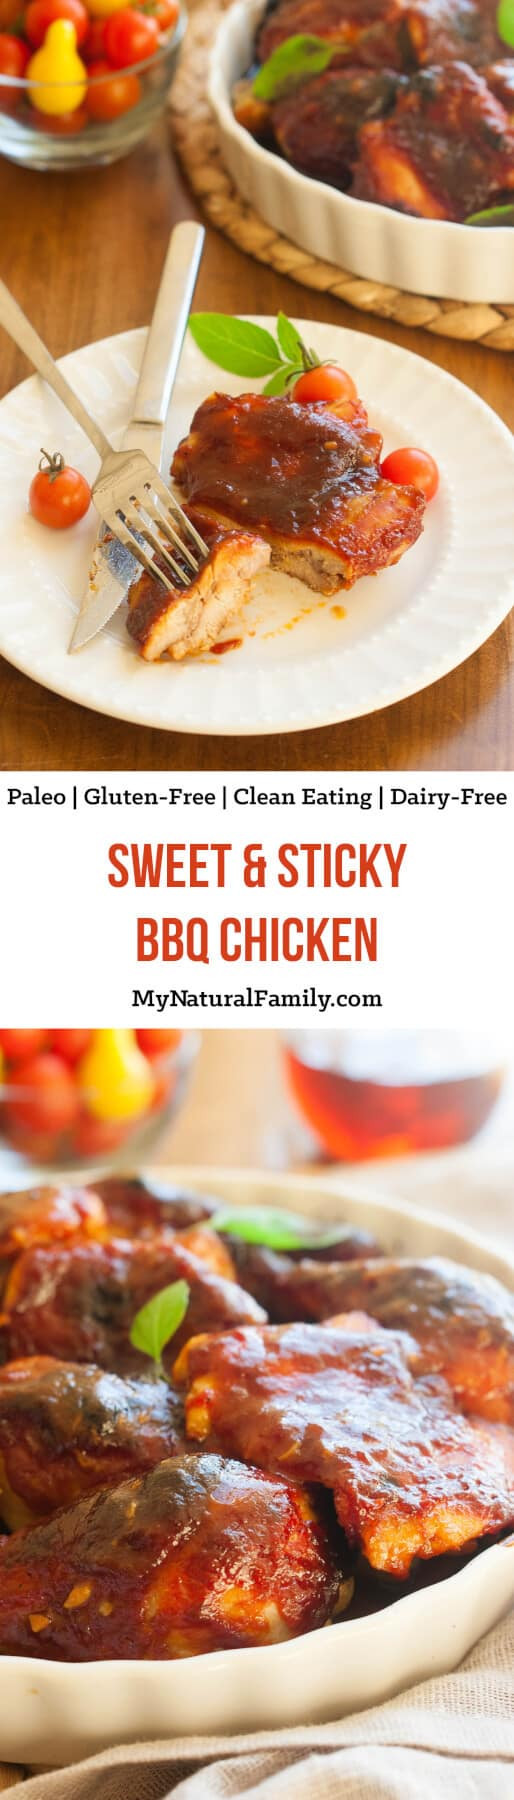 Gluten Free Dairy Free Chicken Recipes
 25 Easy Gluten Free Chicken Recipes for a Month